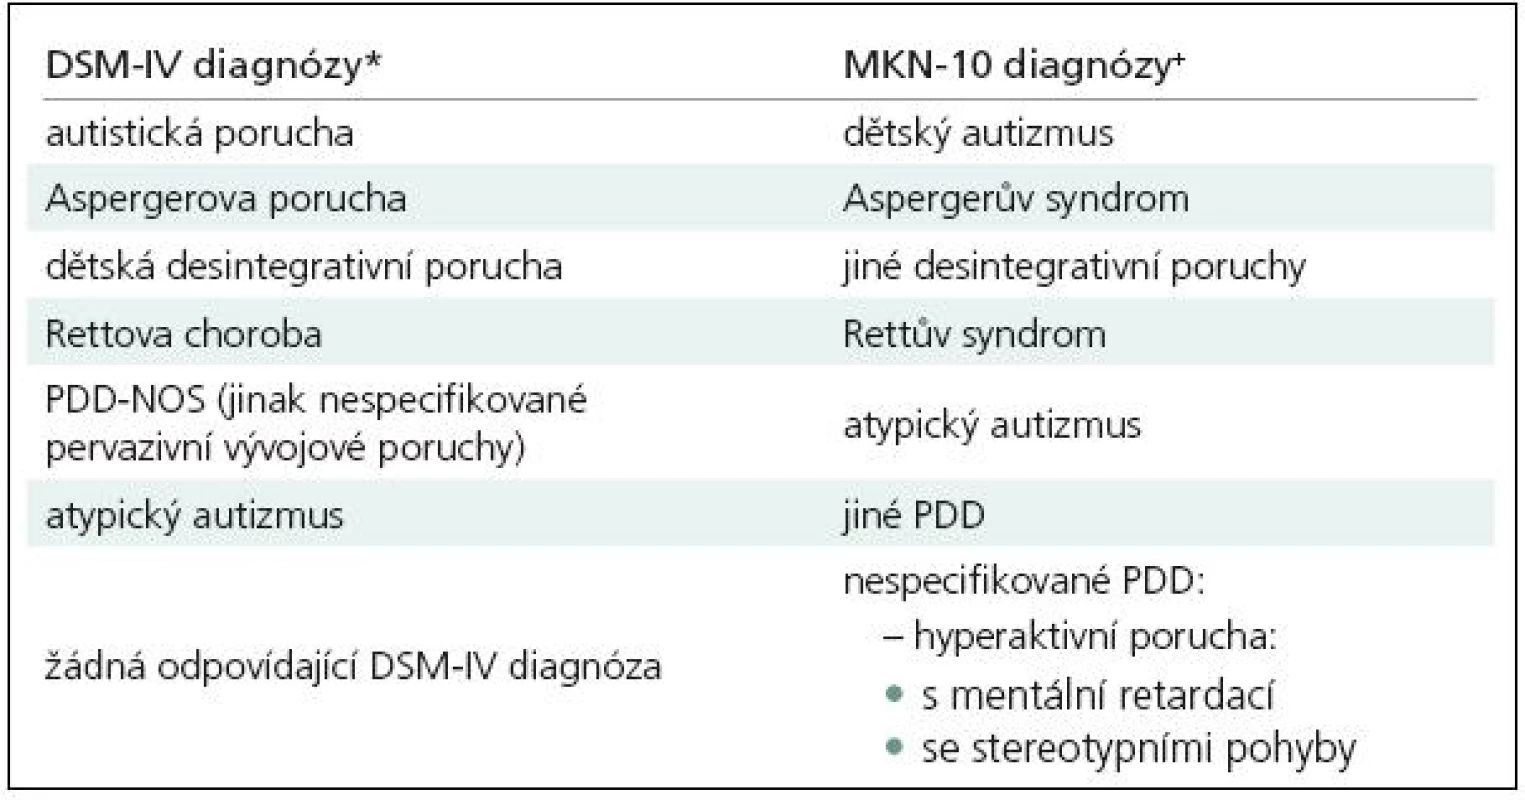 Pervazivní vývojové poruchy autistického spektra (srovnání klasifikačních systémů).